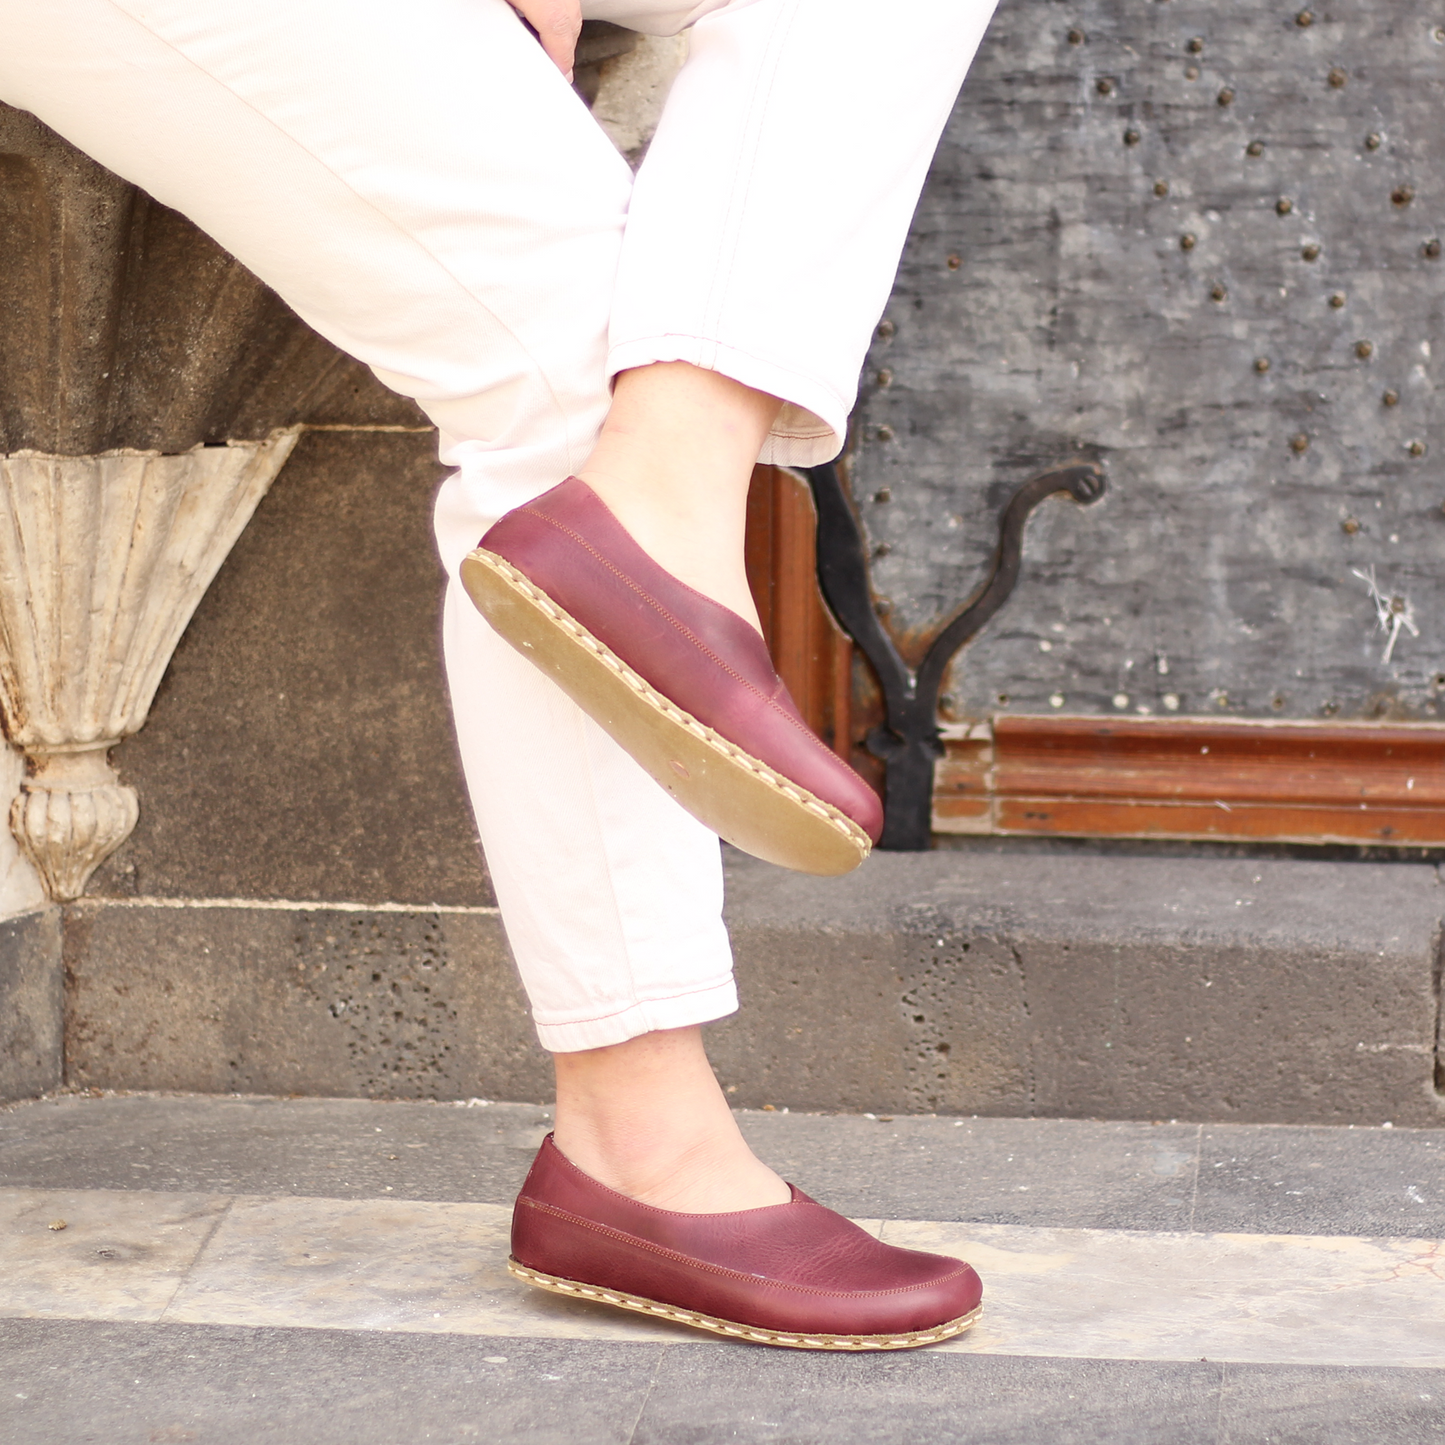 Handmade Barefoot Loafers for Women Burgundy-Women Loafers-Nefes Shoes-4-Nefes Shoes